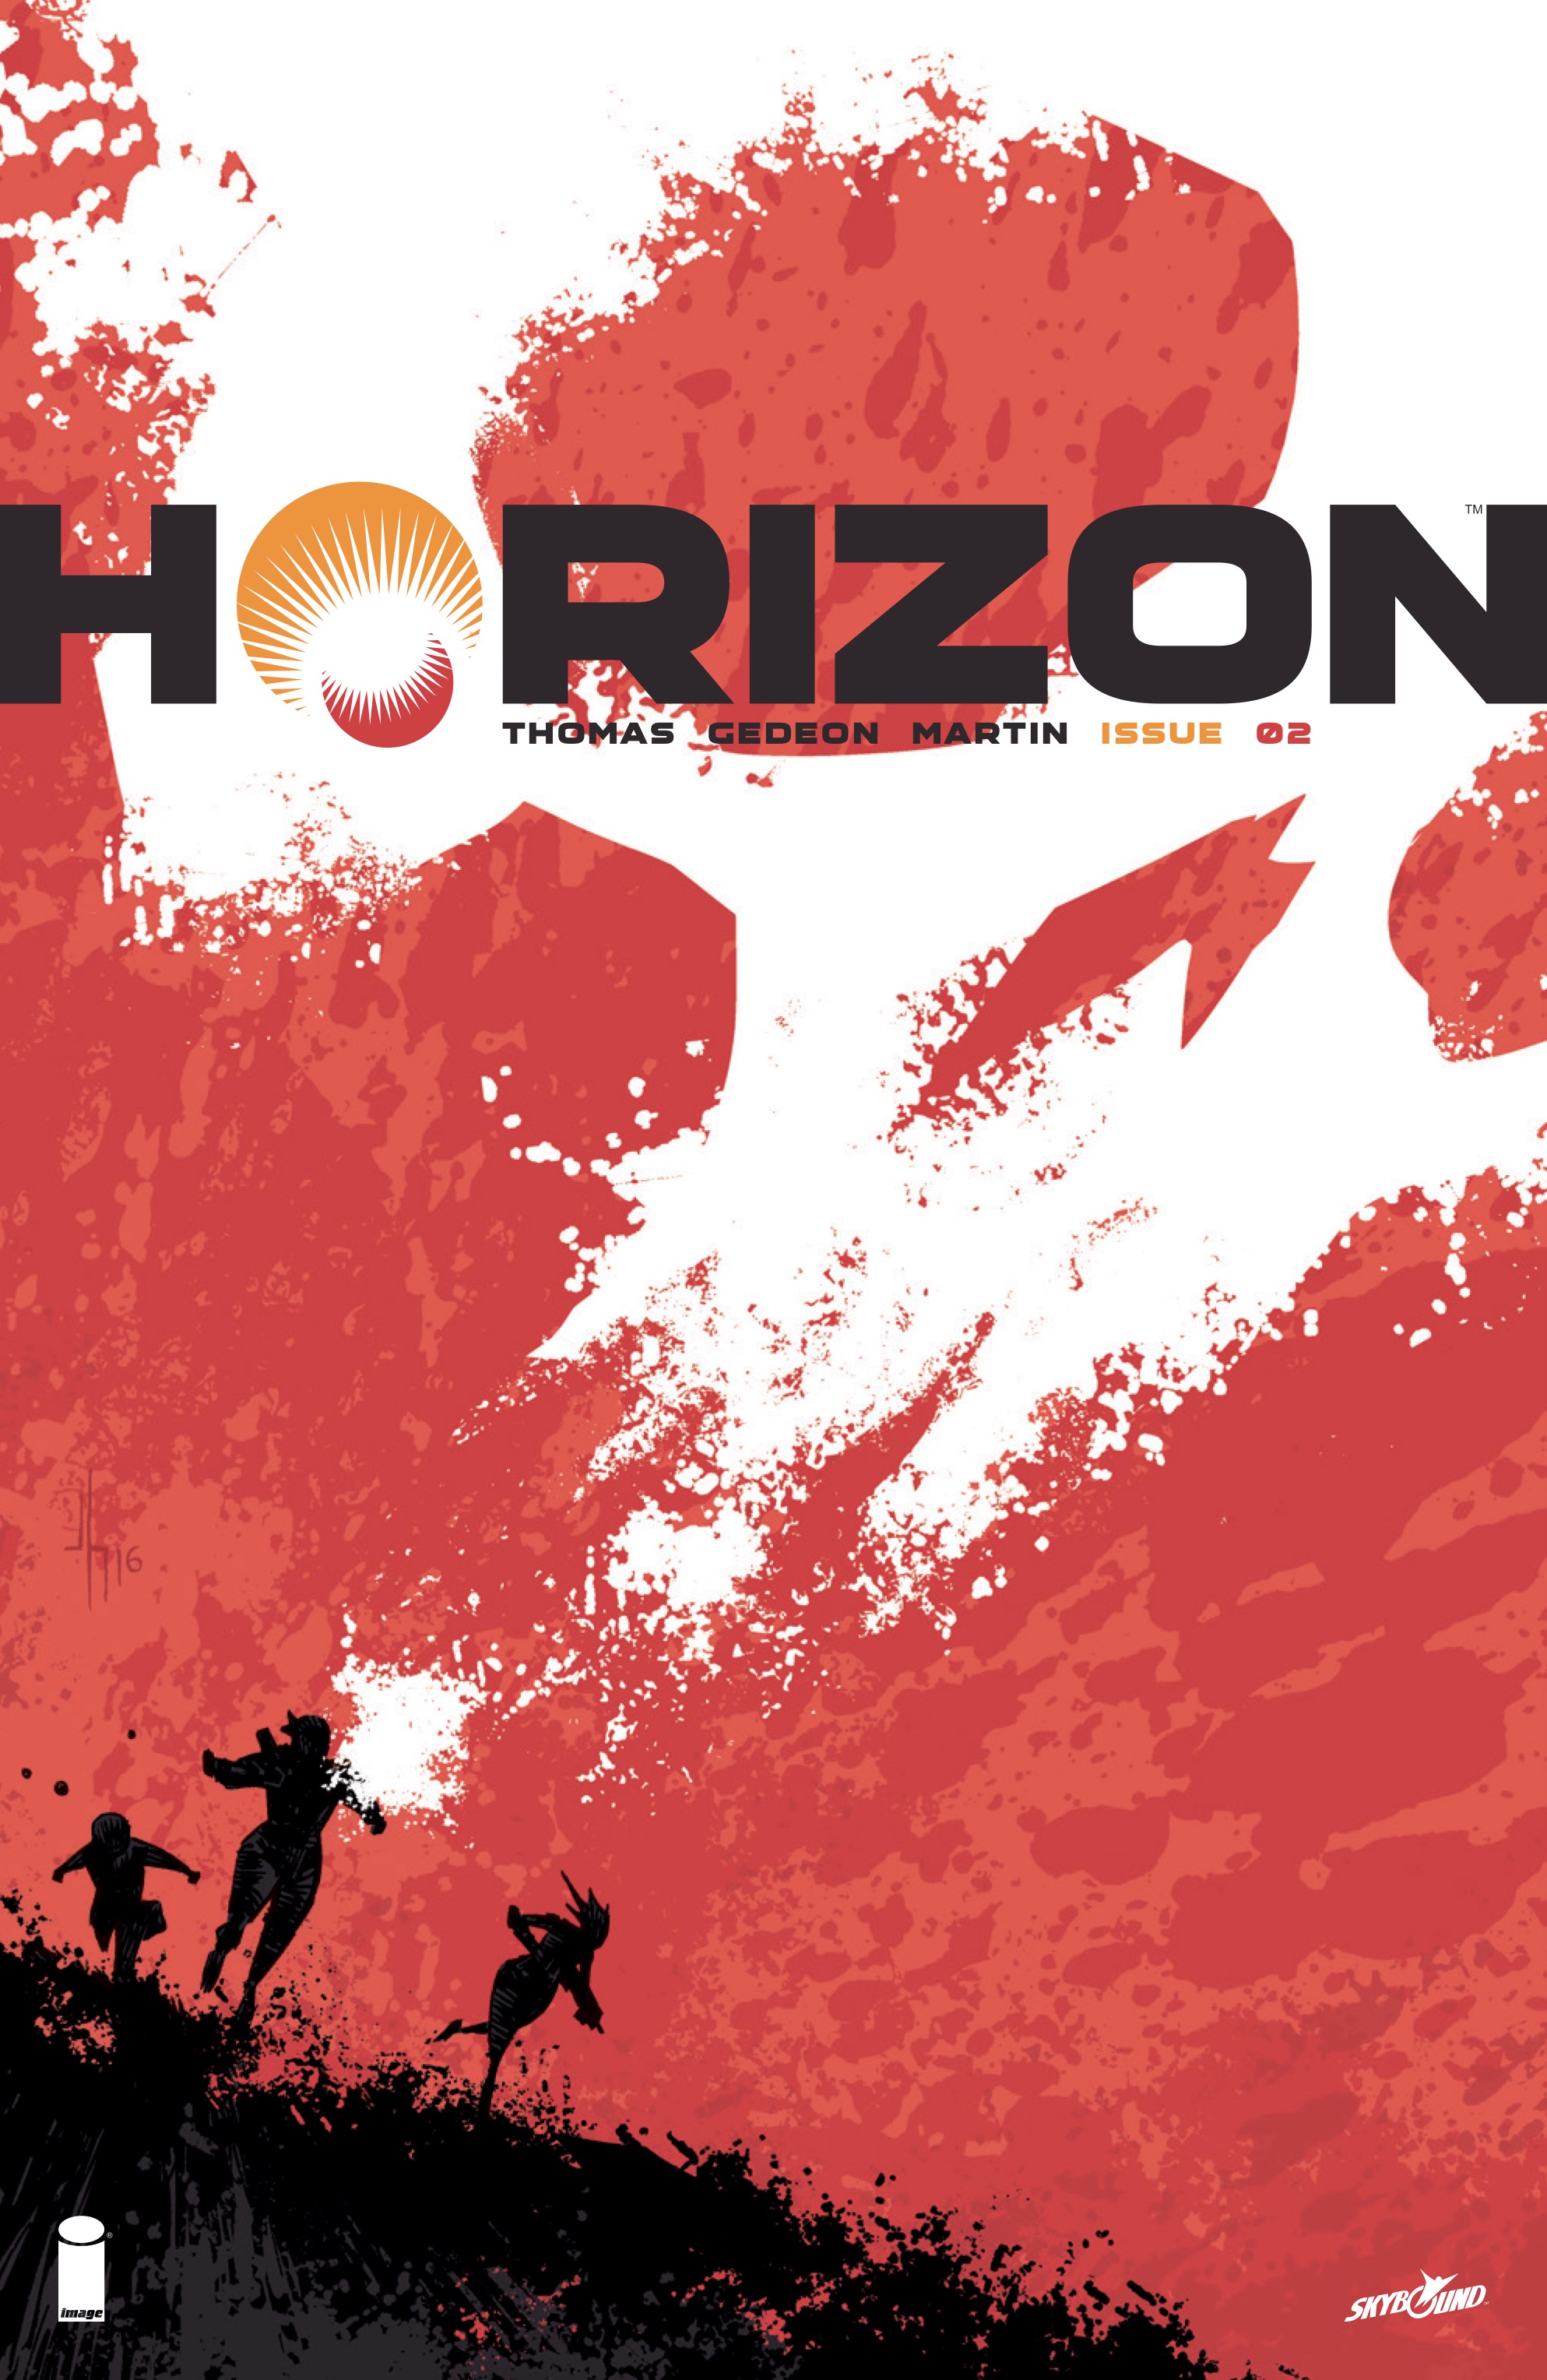 Read online Horizon comic -  Issue #2 - 1